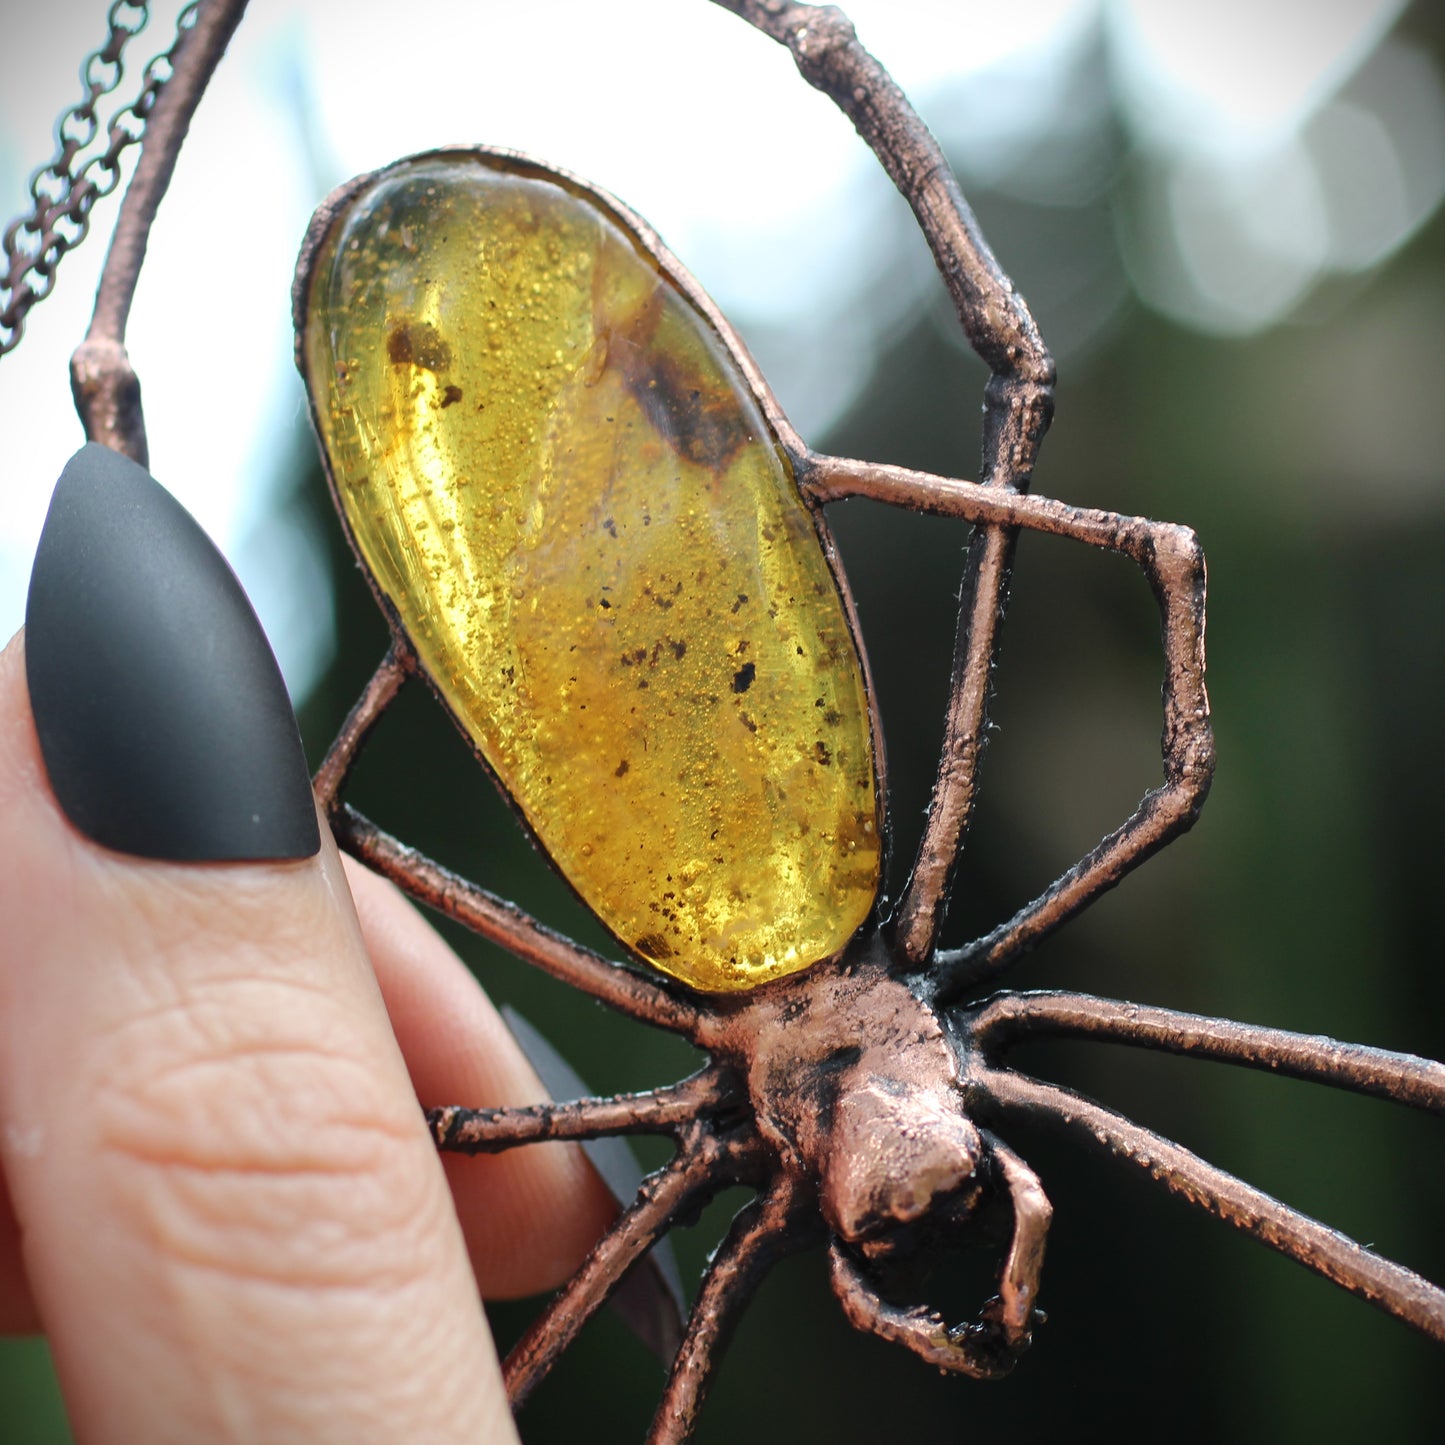 Amber Orb Weaver Spider Necklace